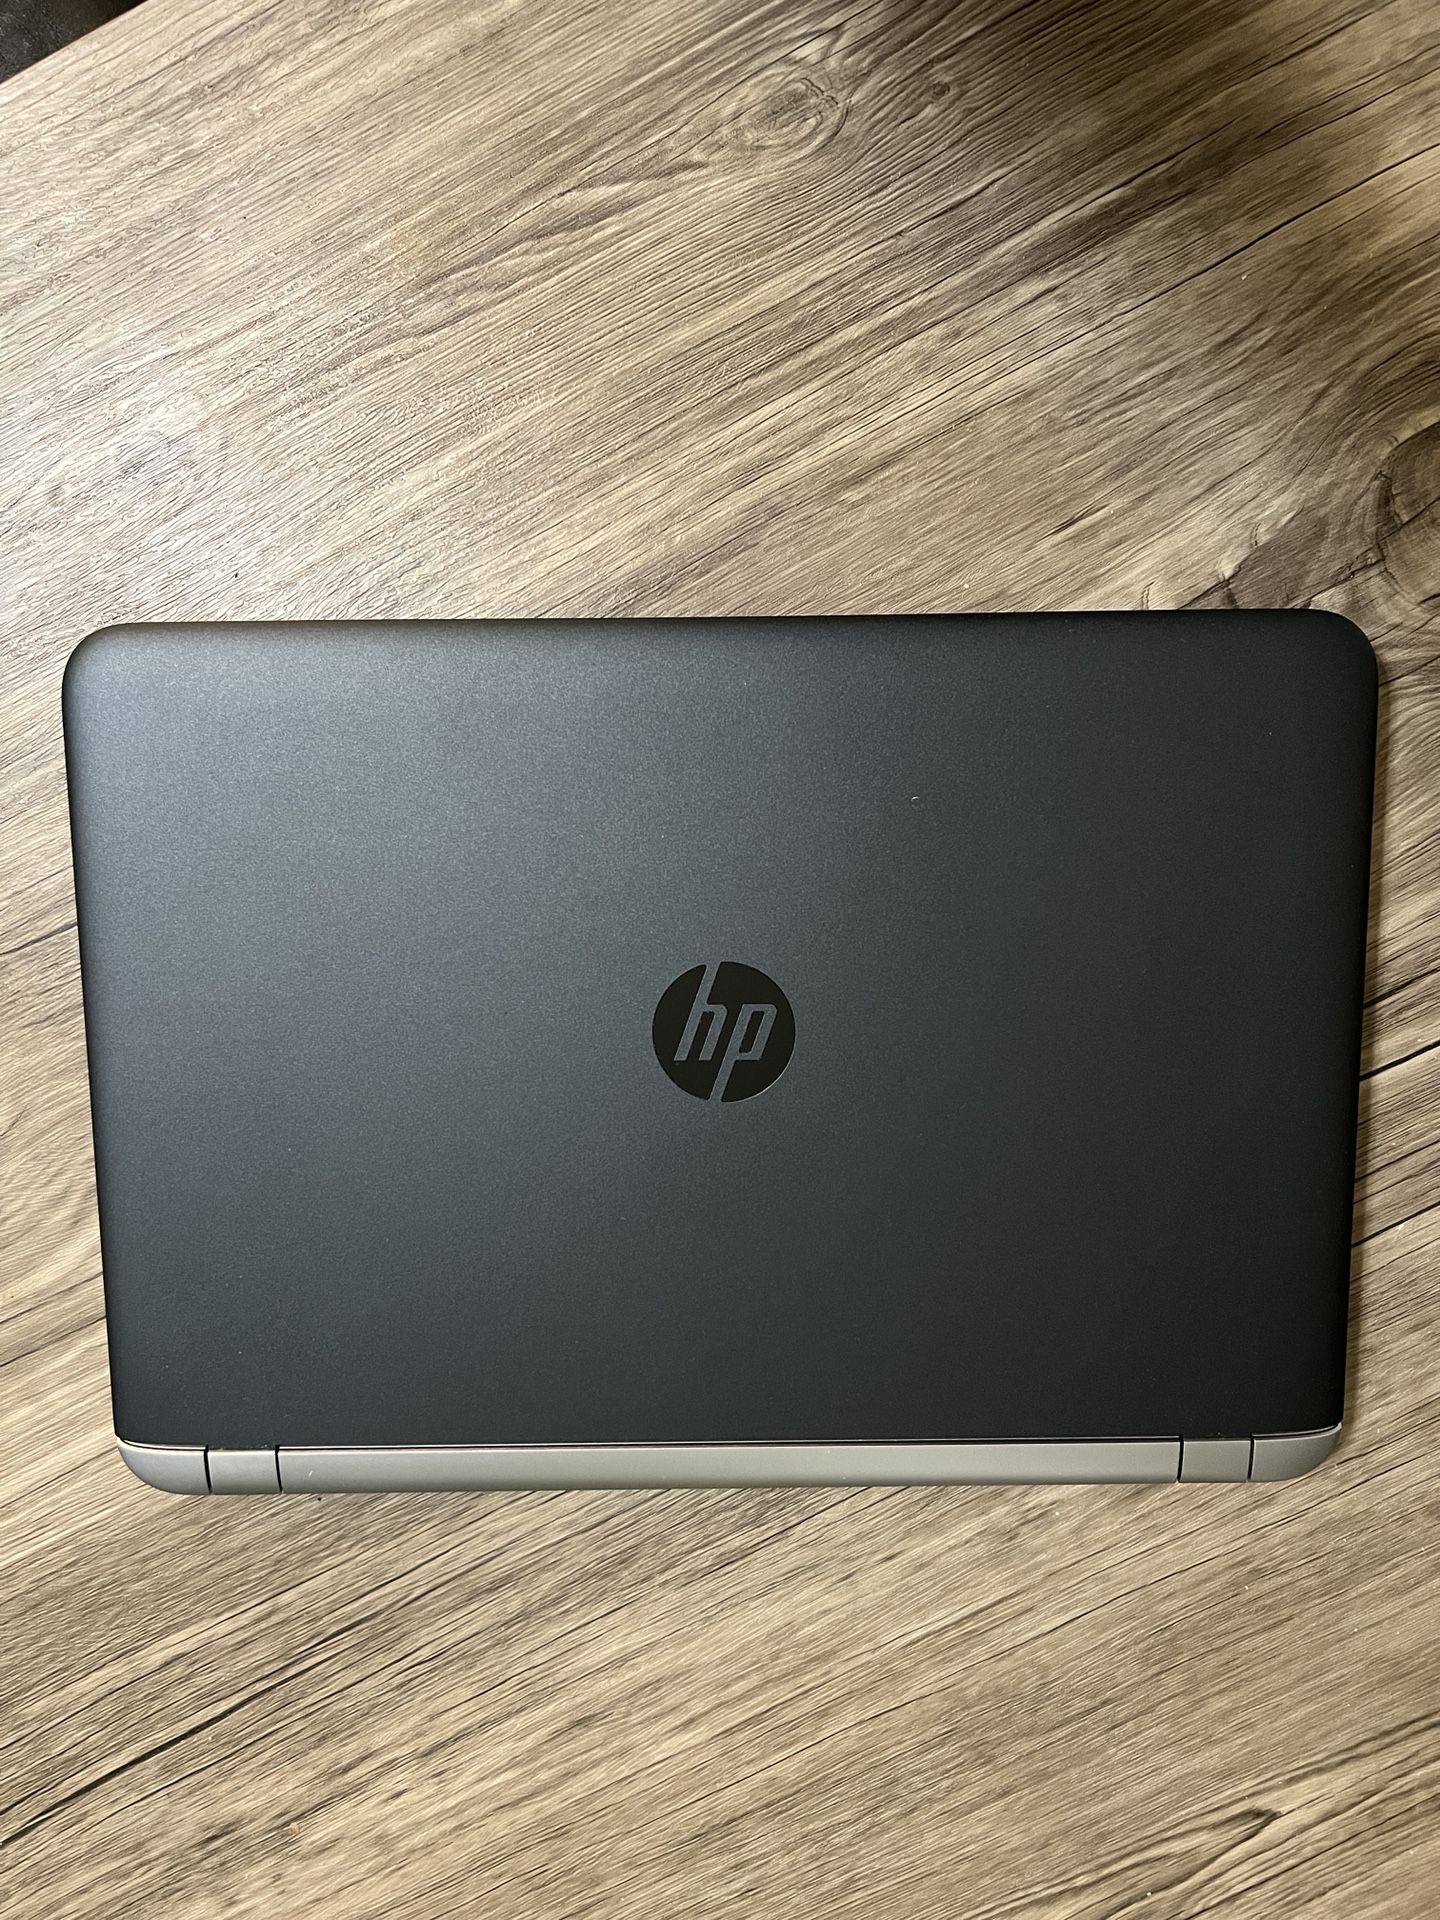 HP Probook 450 G3 PC Laptop - 500GB HDD